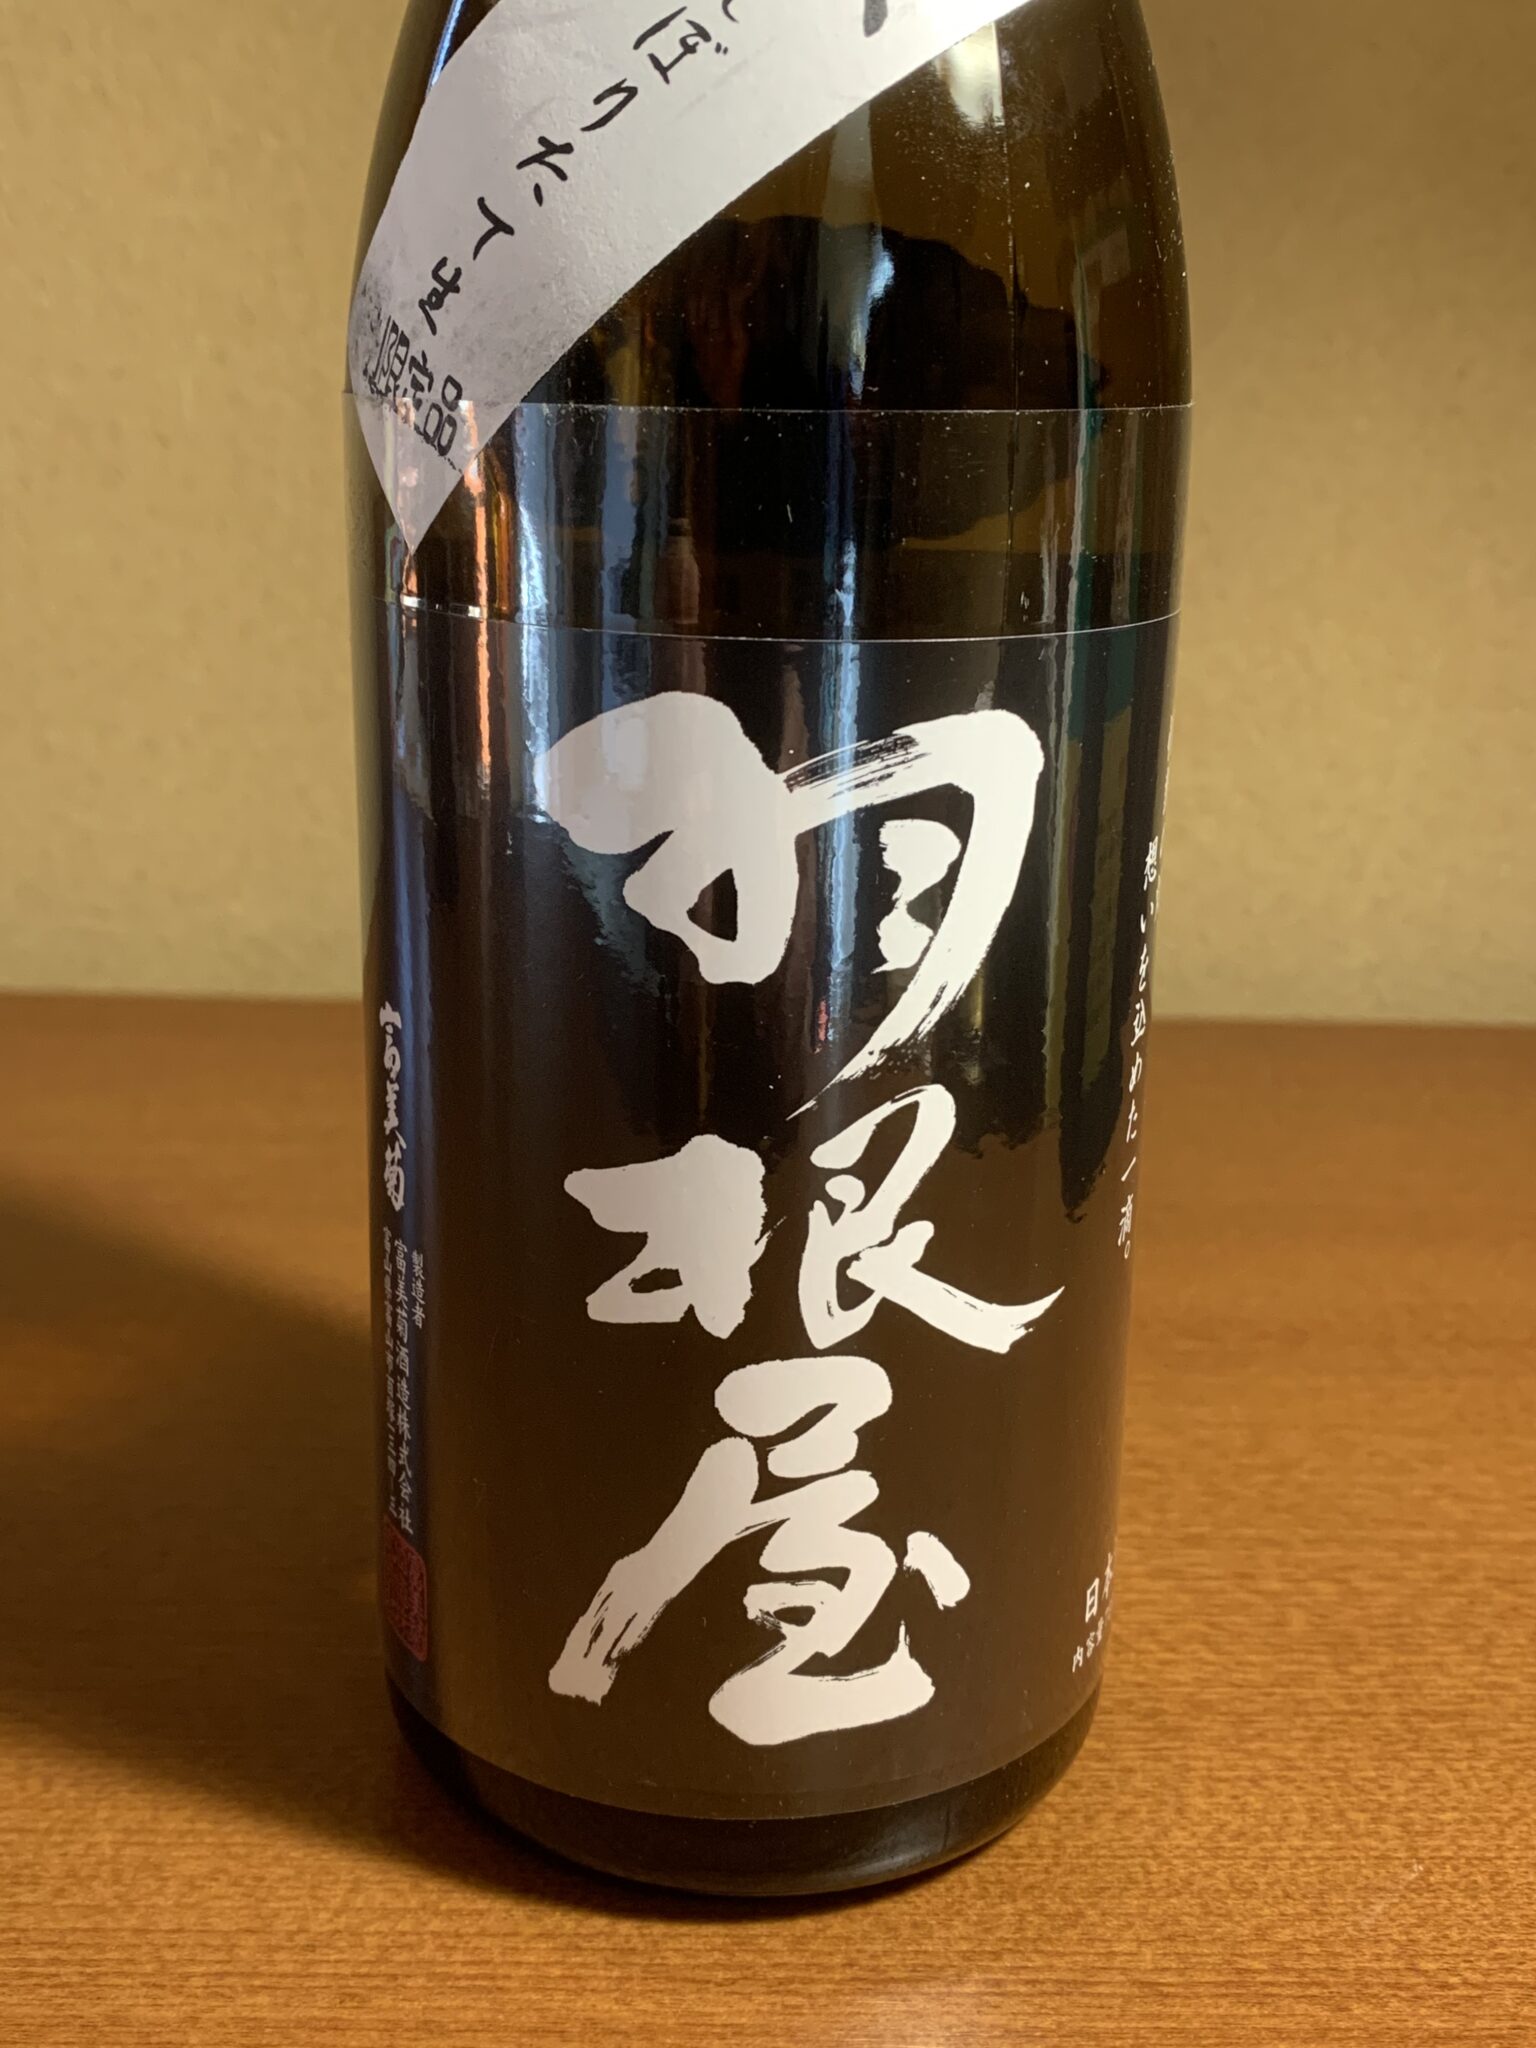 富山の日本酒『羽根屋 吟醸しぼりたて生』は瑞々しい吟醸香と鮮烈な切れ味